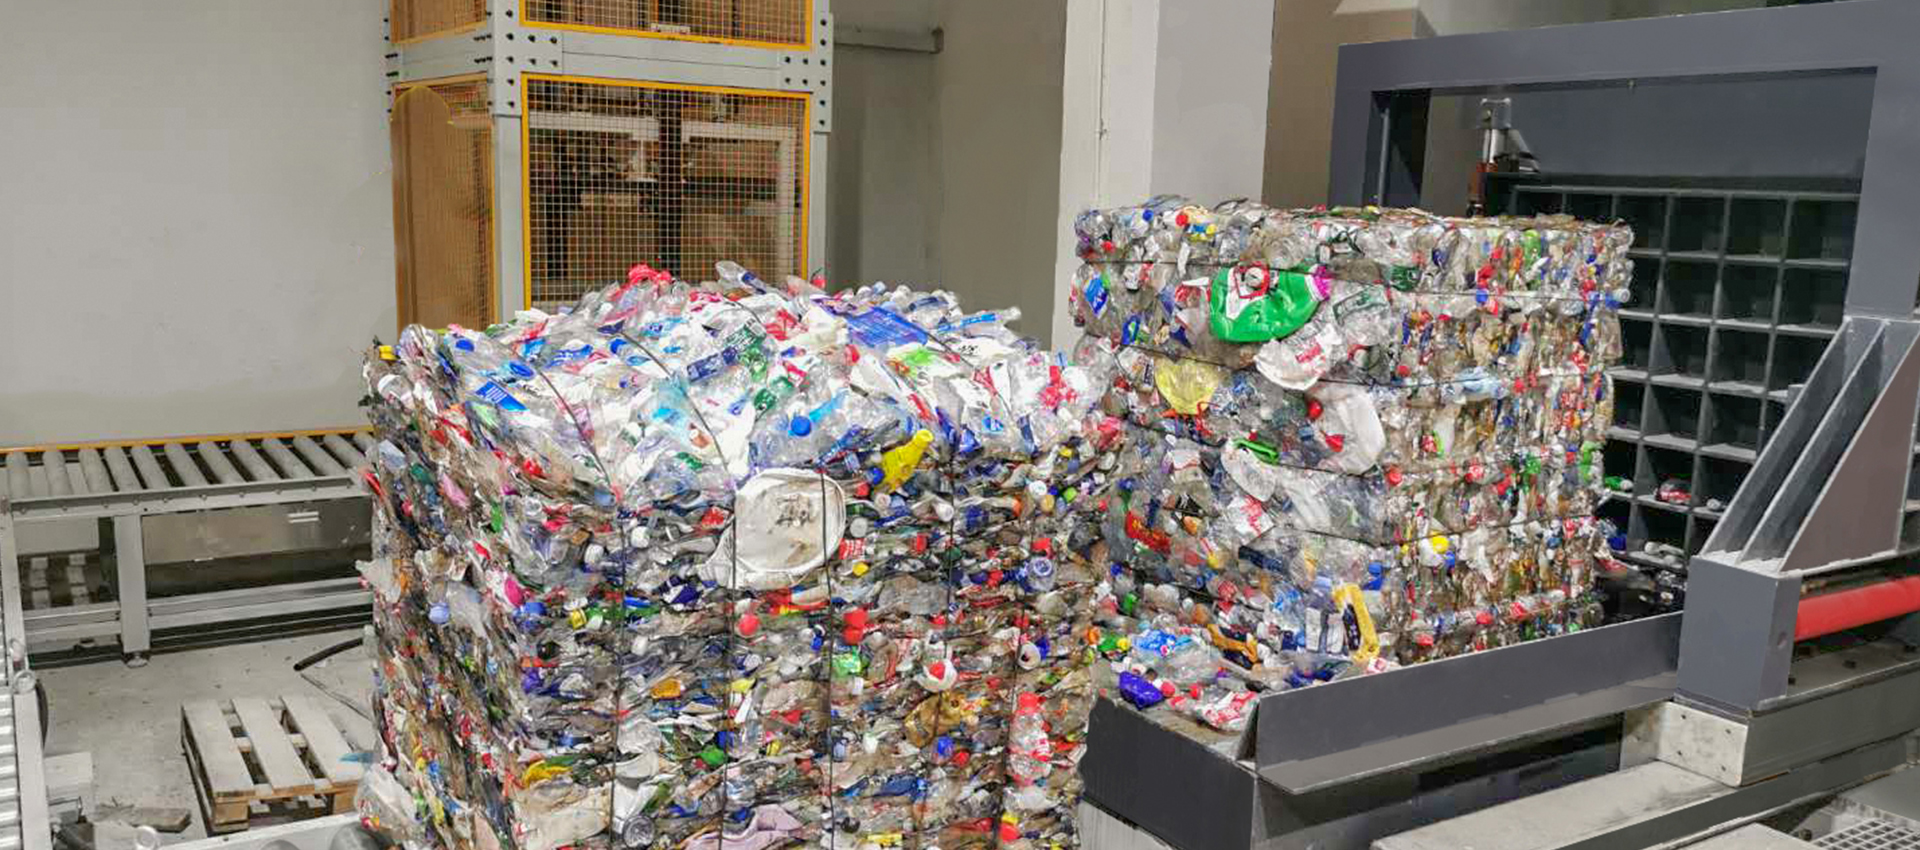 生活垃圾可回收物分拣打包生产线